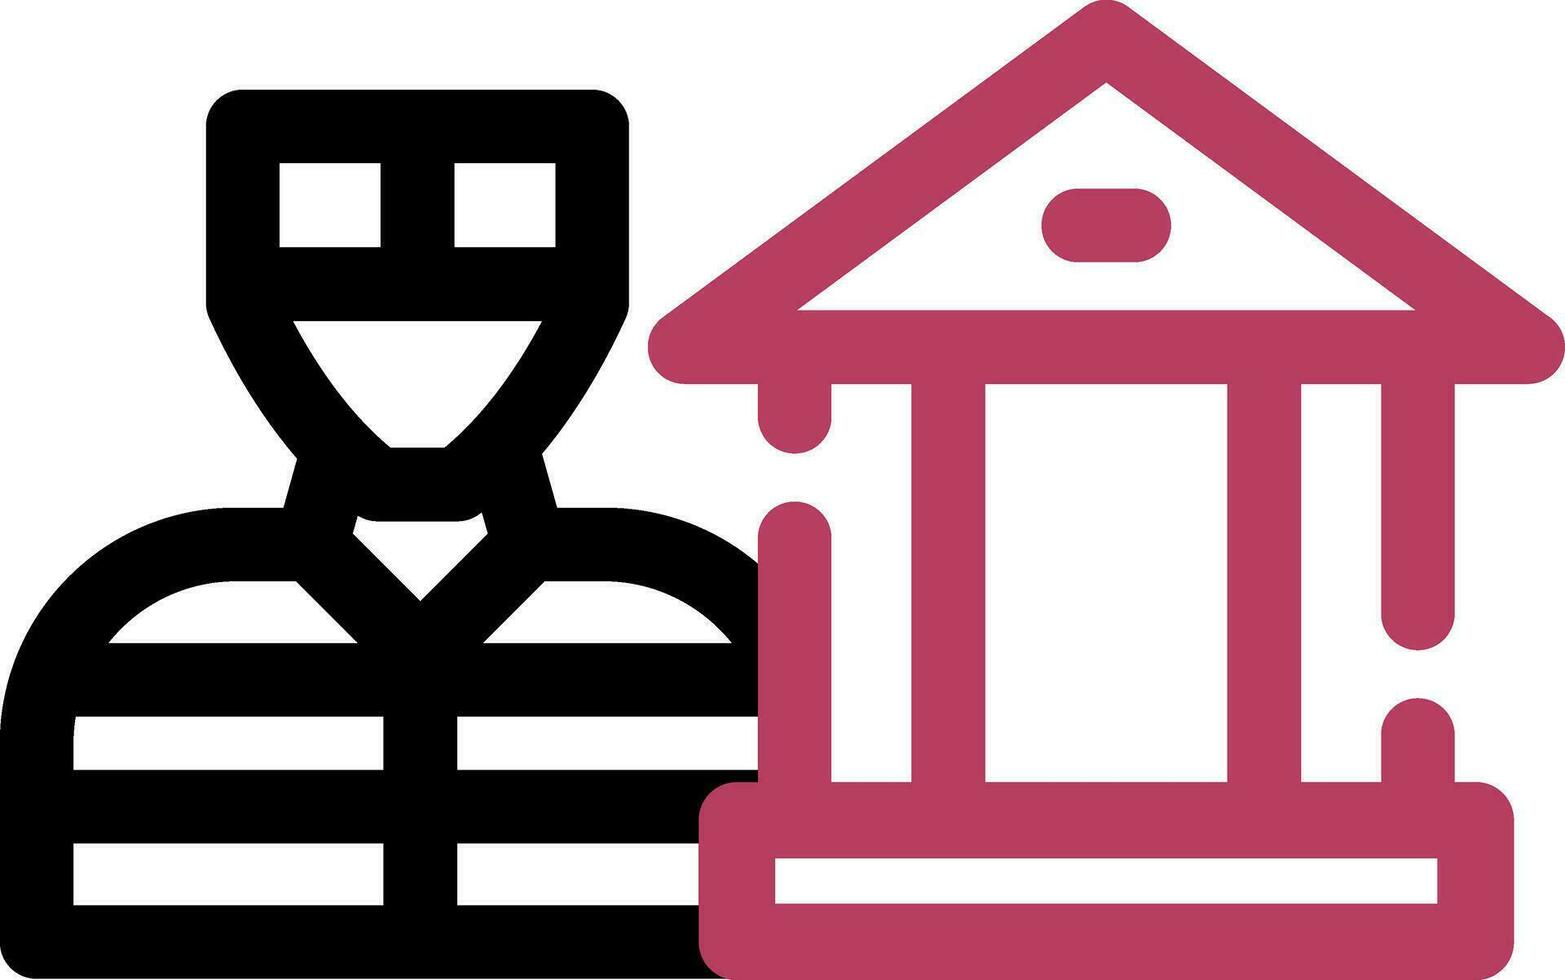 Bank Robbery Creative Icon Design vector